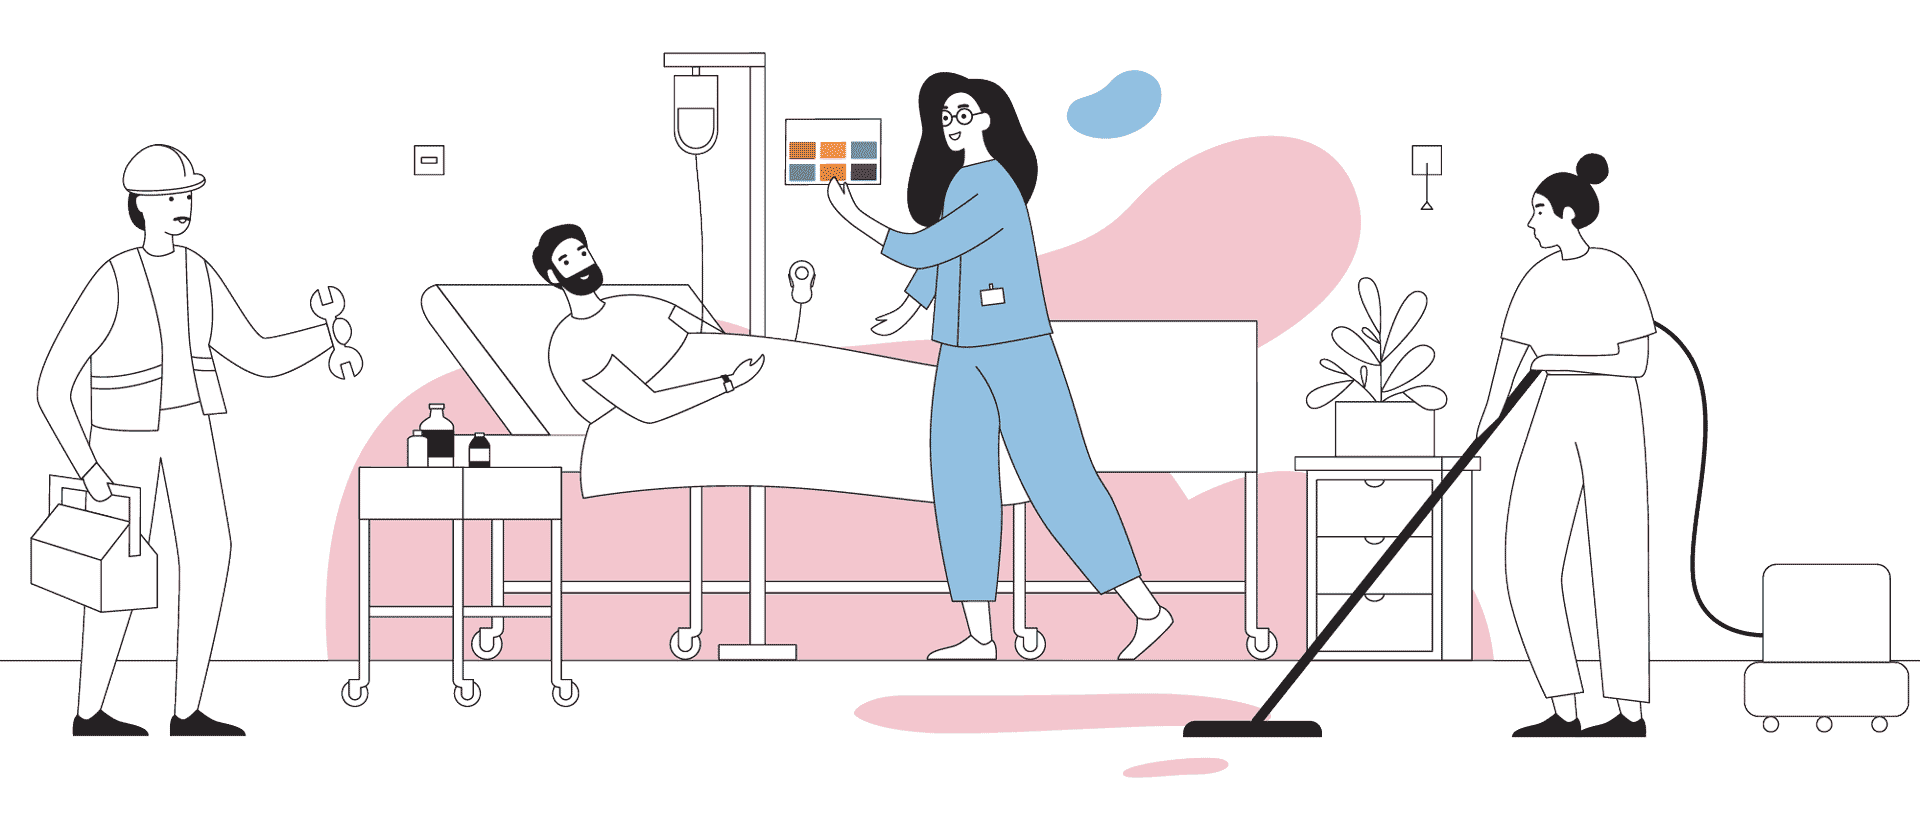 Zaposleni pacientu nudijo poenoteno bolnisnicno oskrbo, ki jo zdruzuje sestrski klicni sistem NurseCare